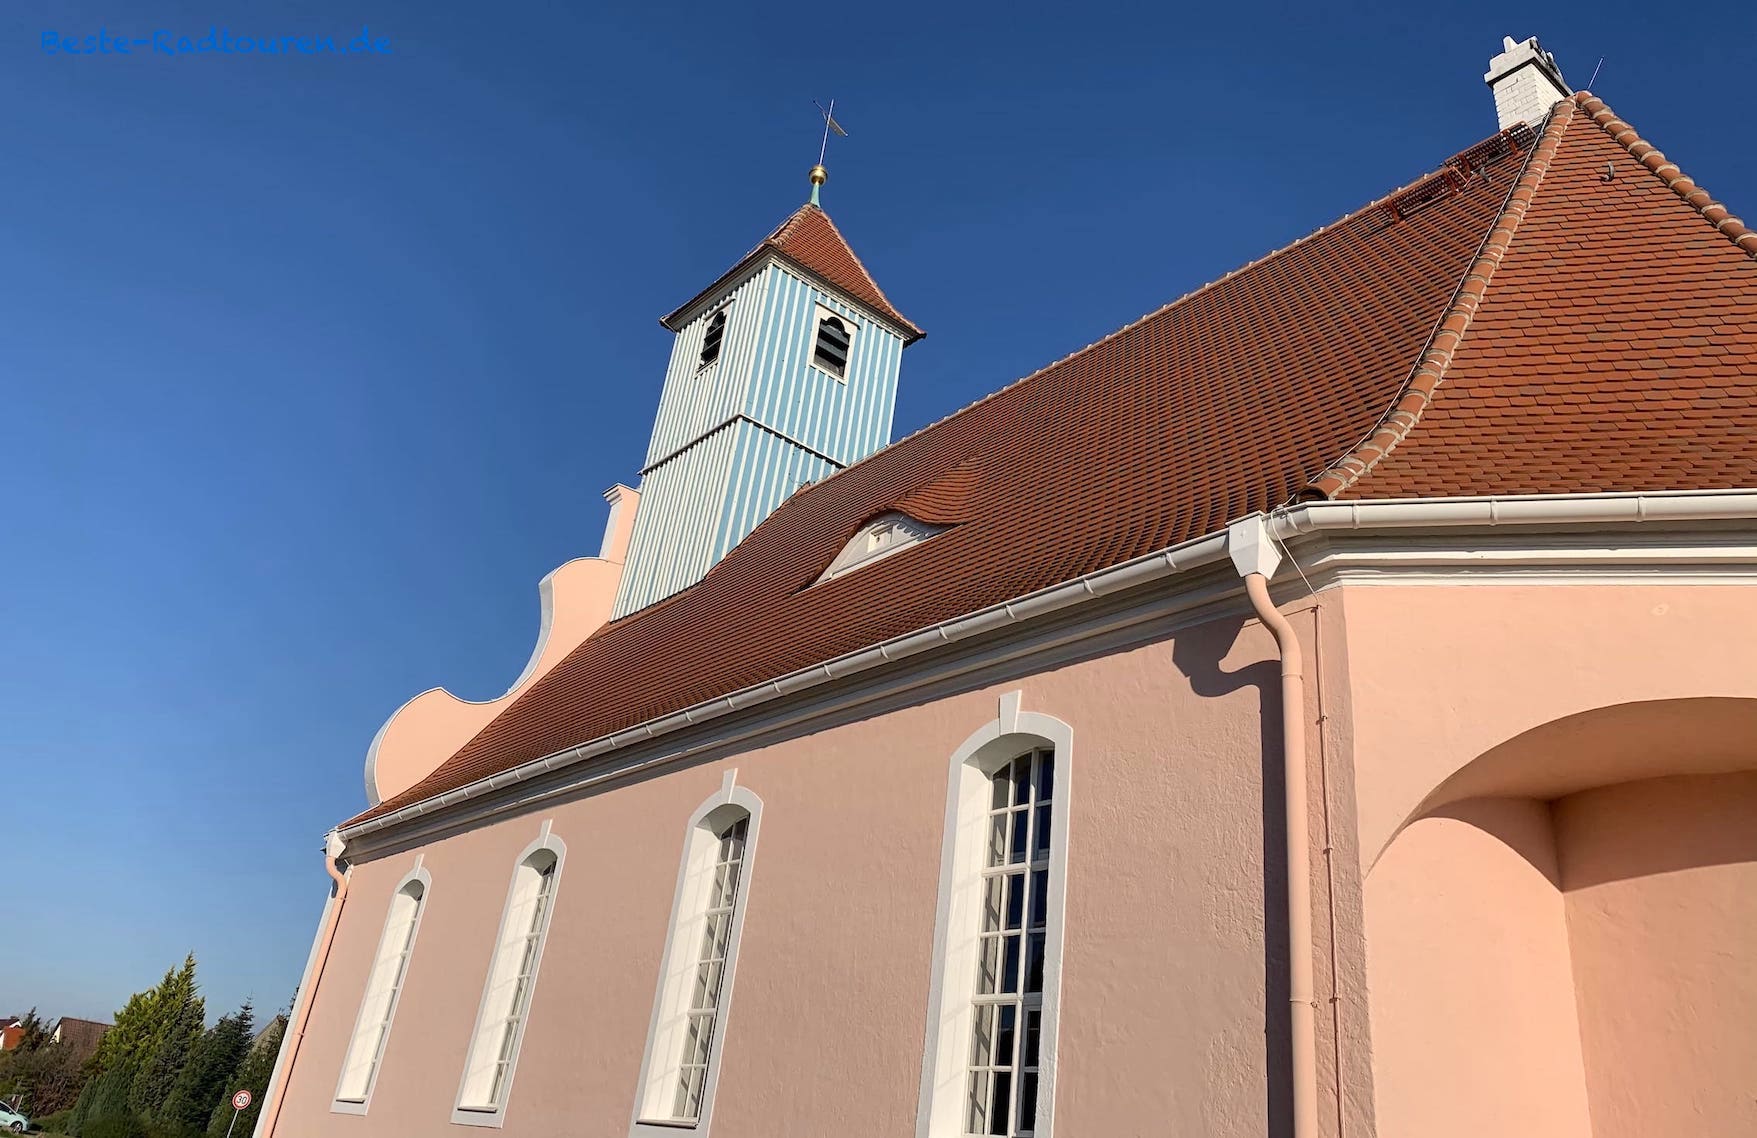 Döbbrick bei Cottbus: Dorfkirche mit Turm in blau-weiß gestreift